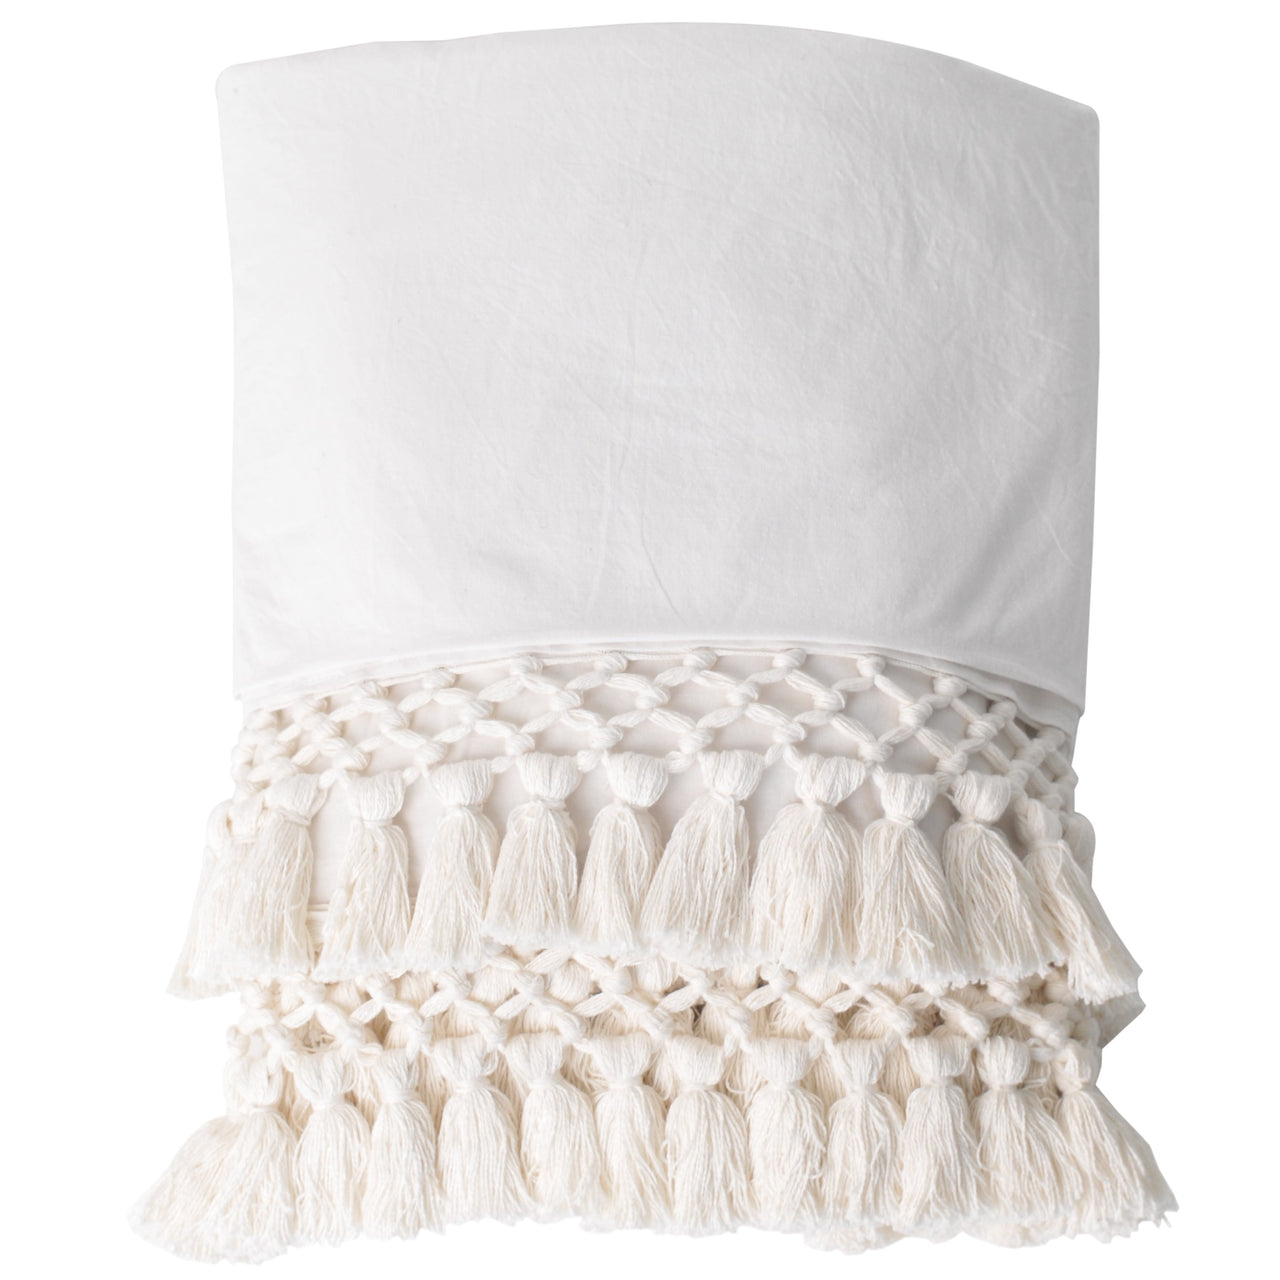 macrame throw white ivory bed cover coverlet blanket trim pom pom tassels